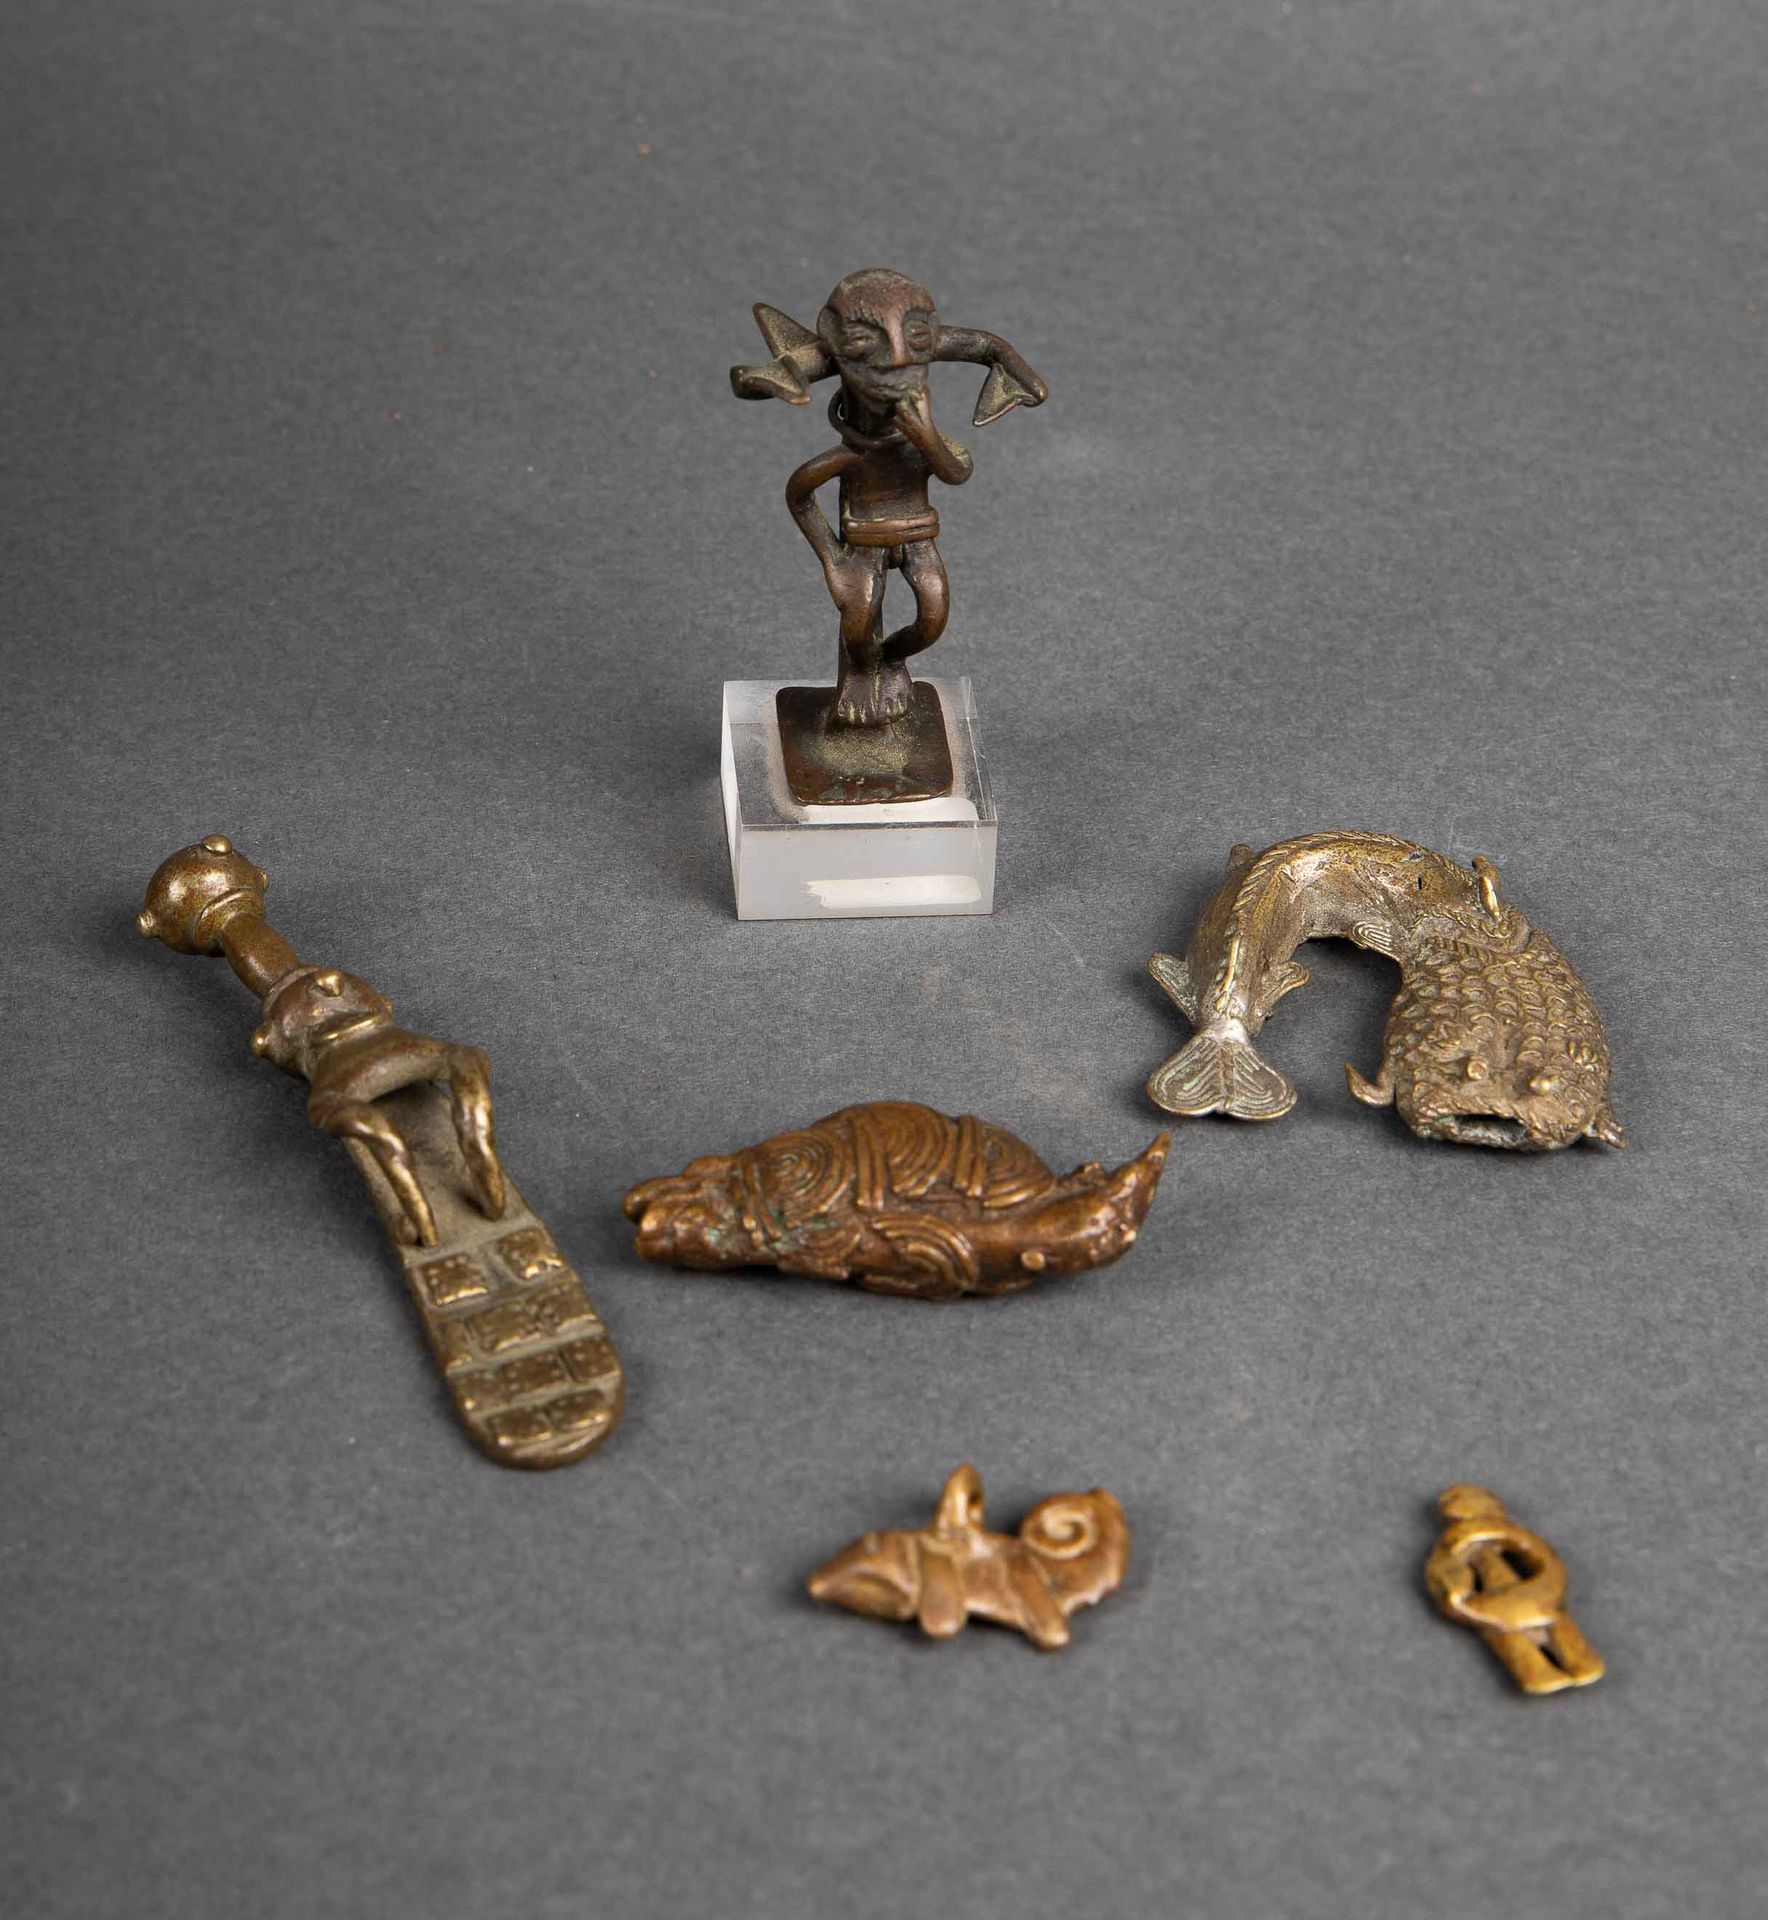 Null 加纳的一套四件阿散蒂雕像砝码；科特迪瓦共和国Sénoufo的一个拟人护身符；洛比的一个变色龙吊坠。青铜材质，带有古老的铜锈。20世纪初。长：8.5；5&hellip;